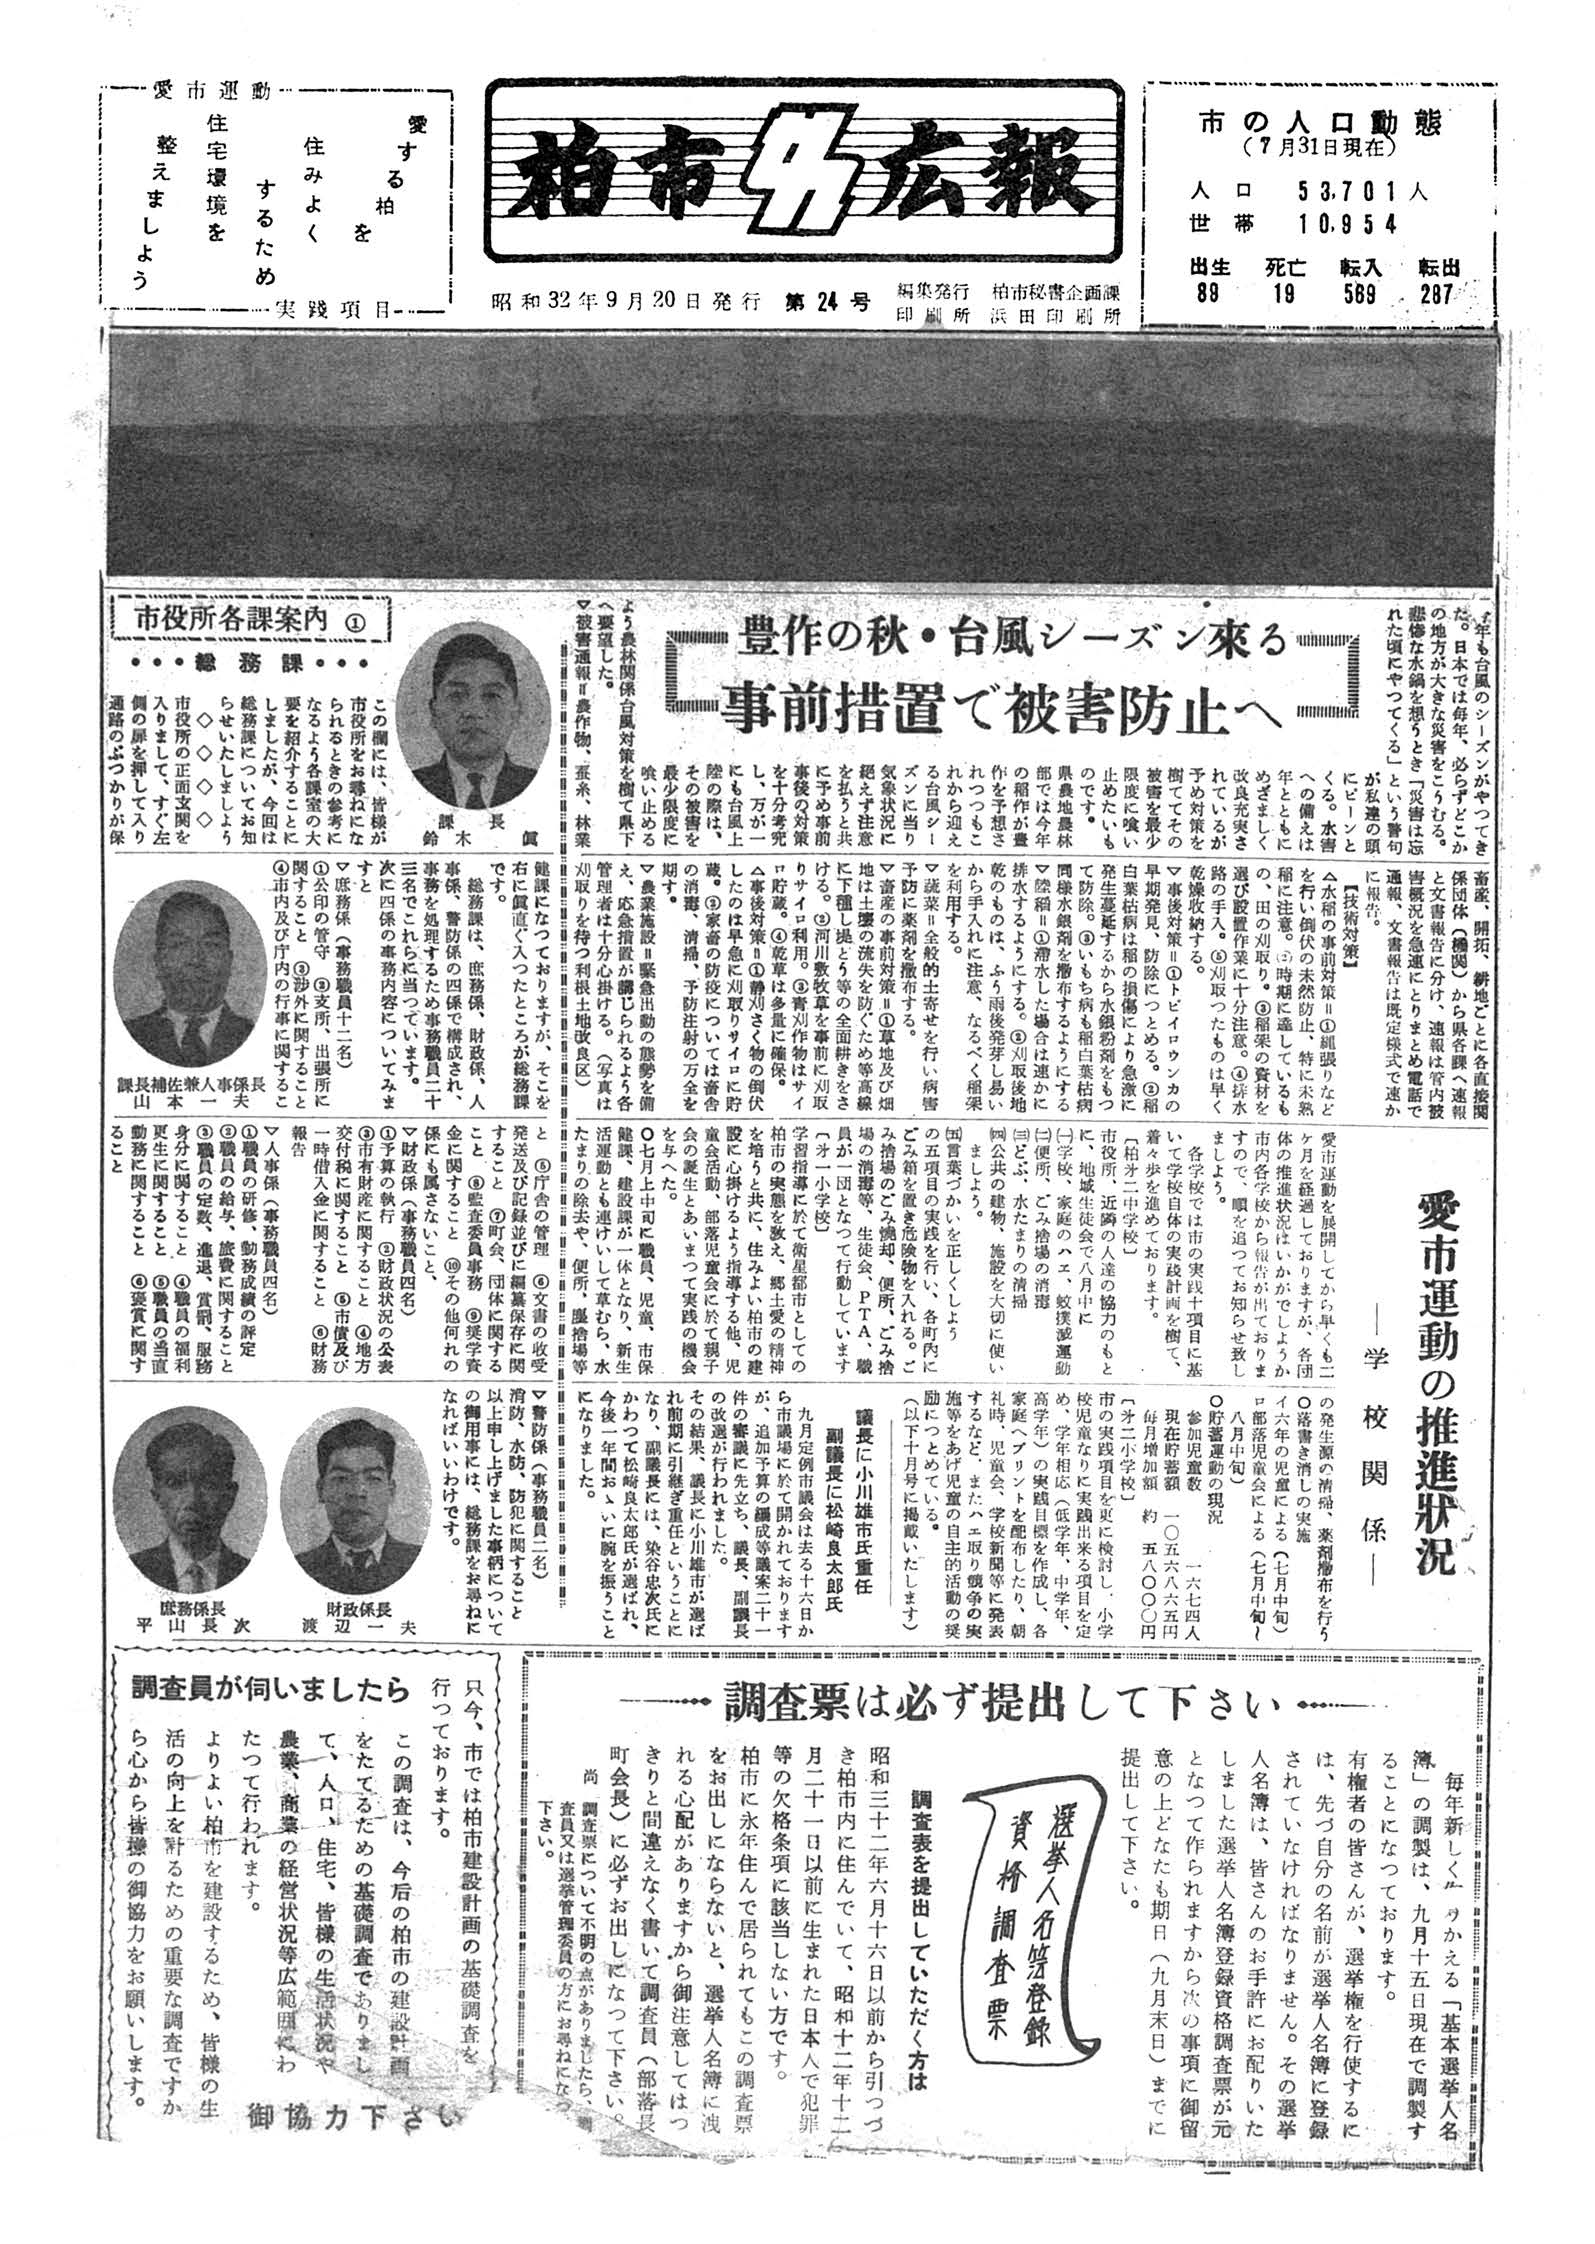 広報かしわ　昭和32年9月20日発行　24号